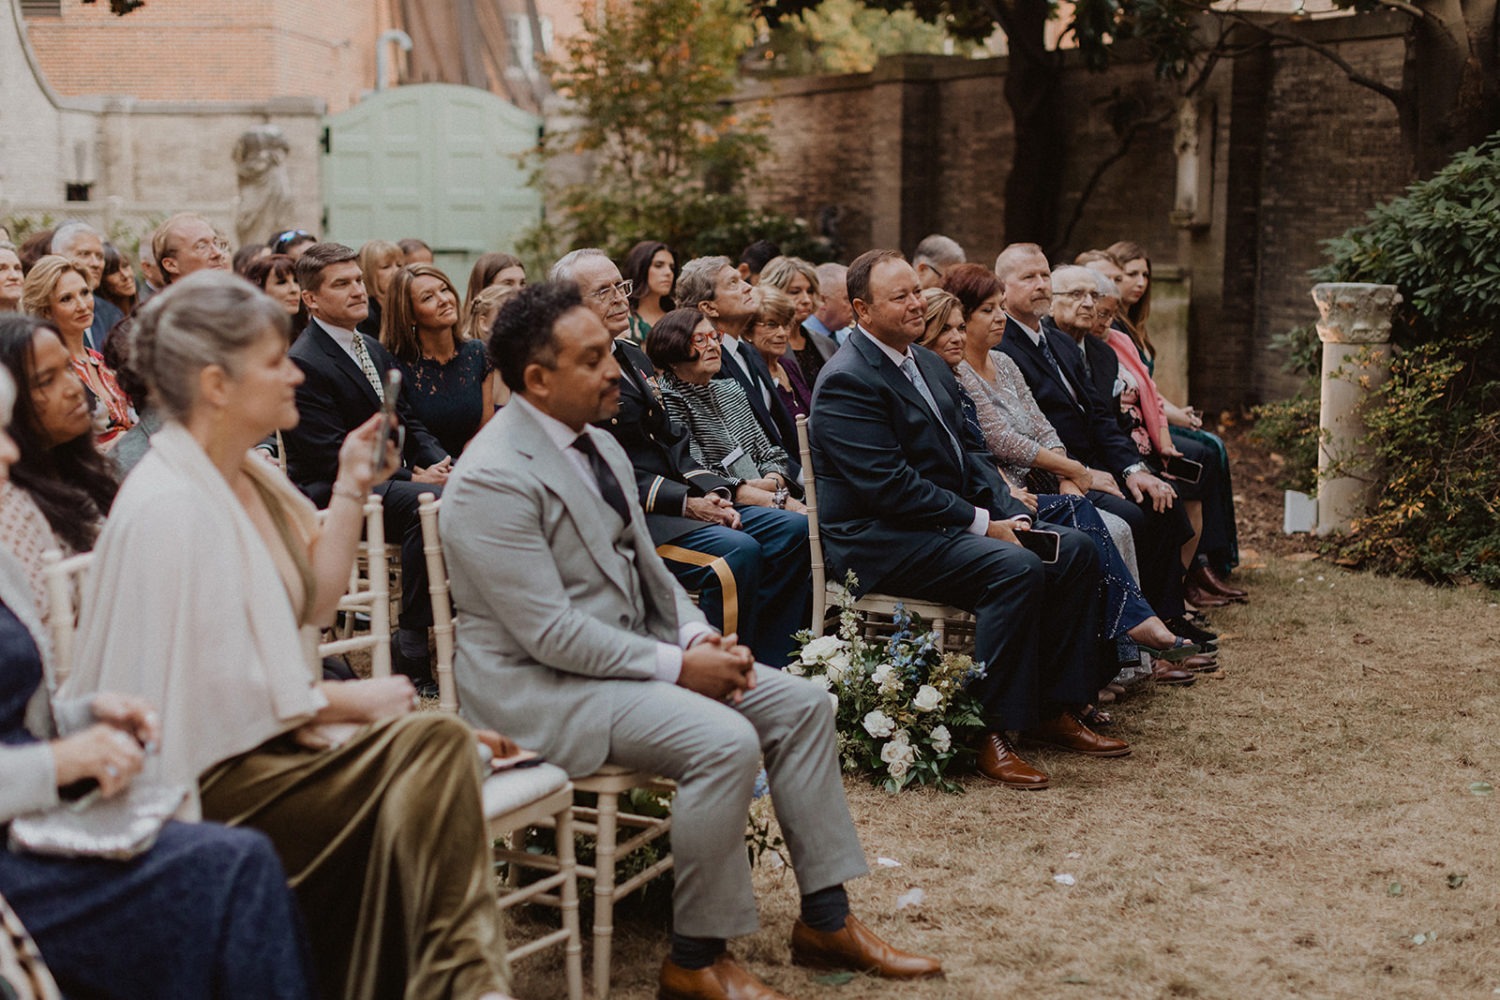 weddings guests sit during outdoor DC garden wedding ceremony